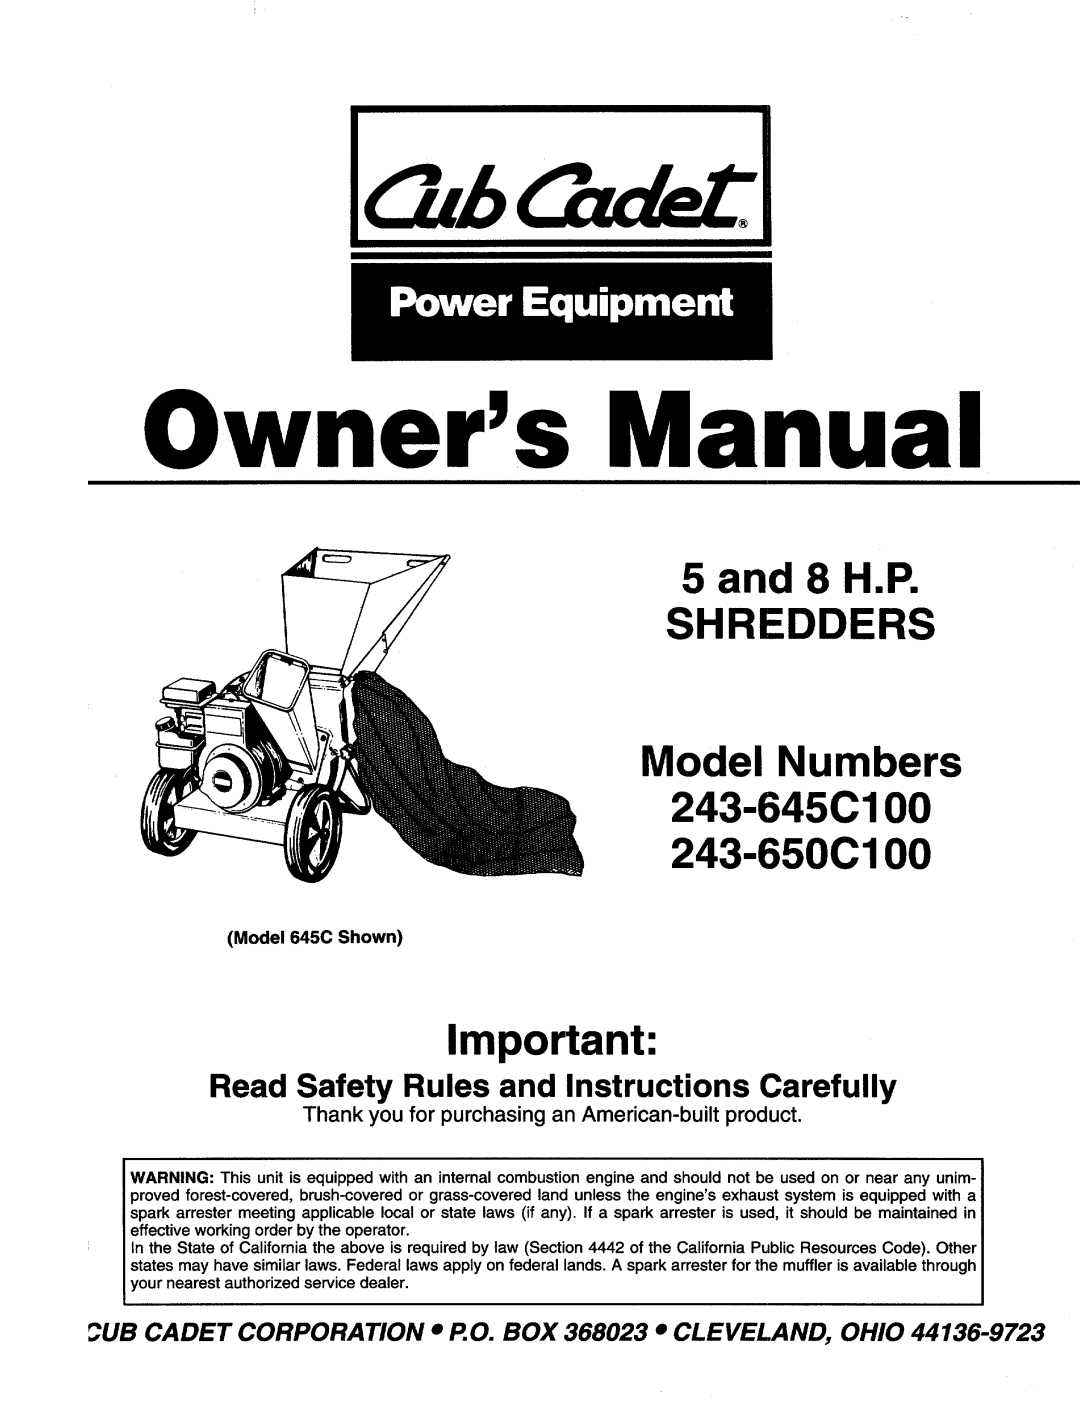 Cub Cadet 243-650C100, 243-645C100 manual 